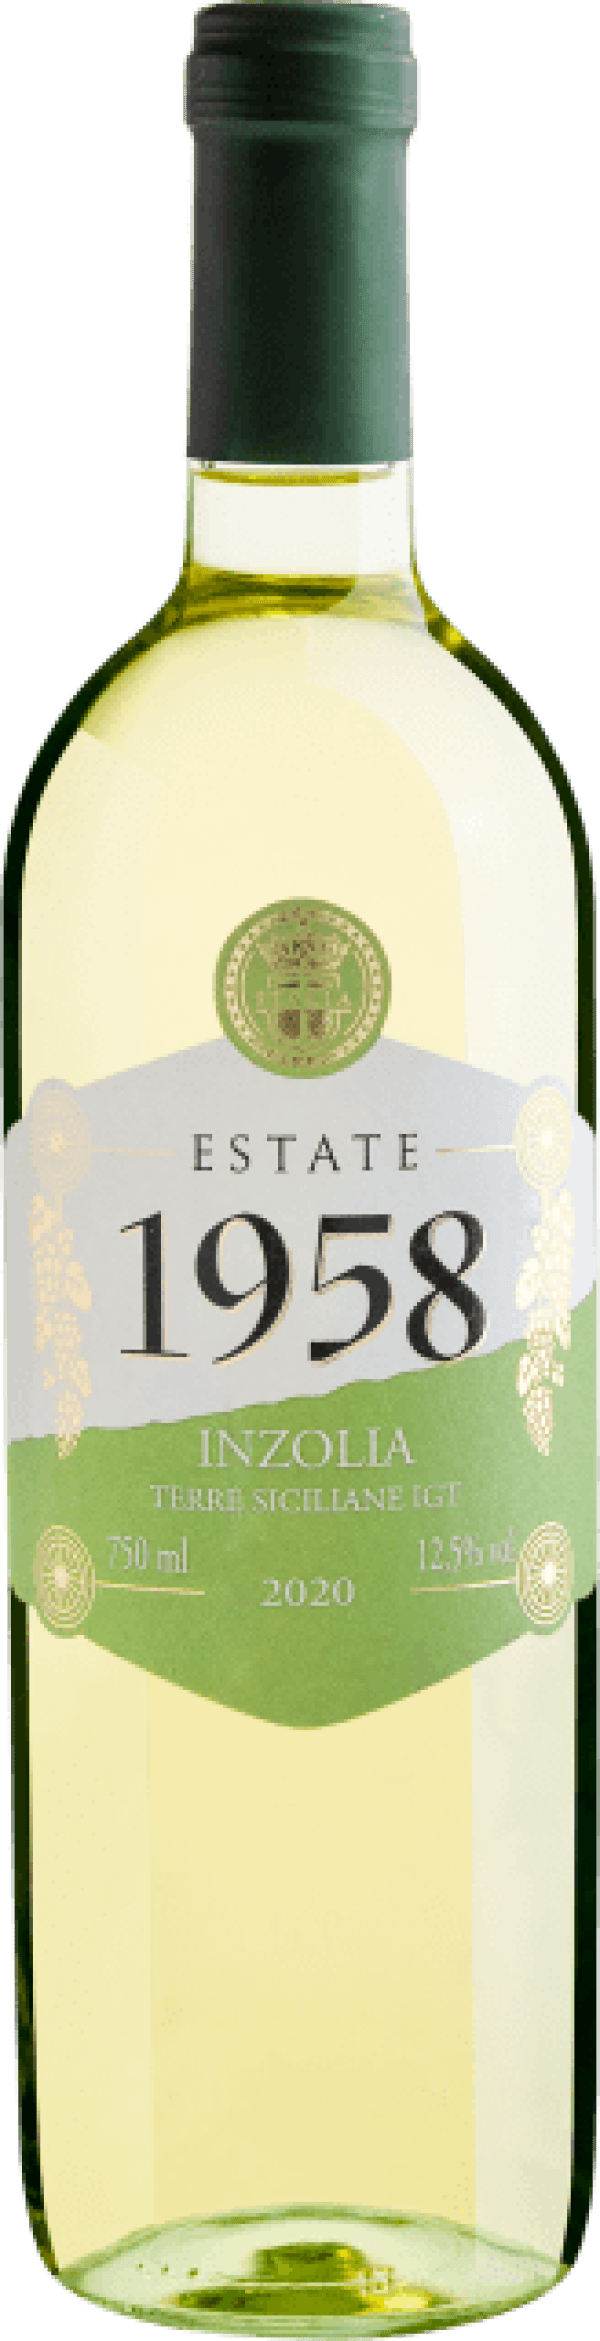 Estate 1958 Inzolia Terre Sicilliane IGT 2020